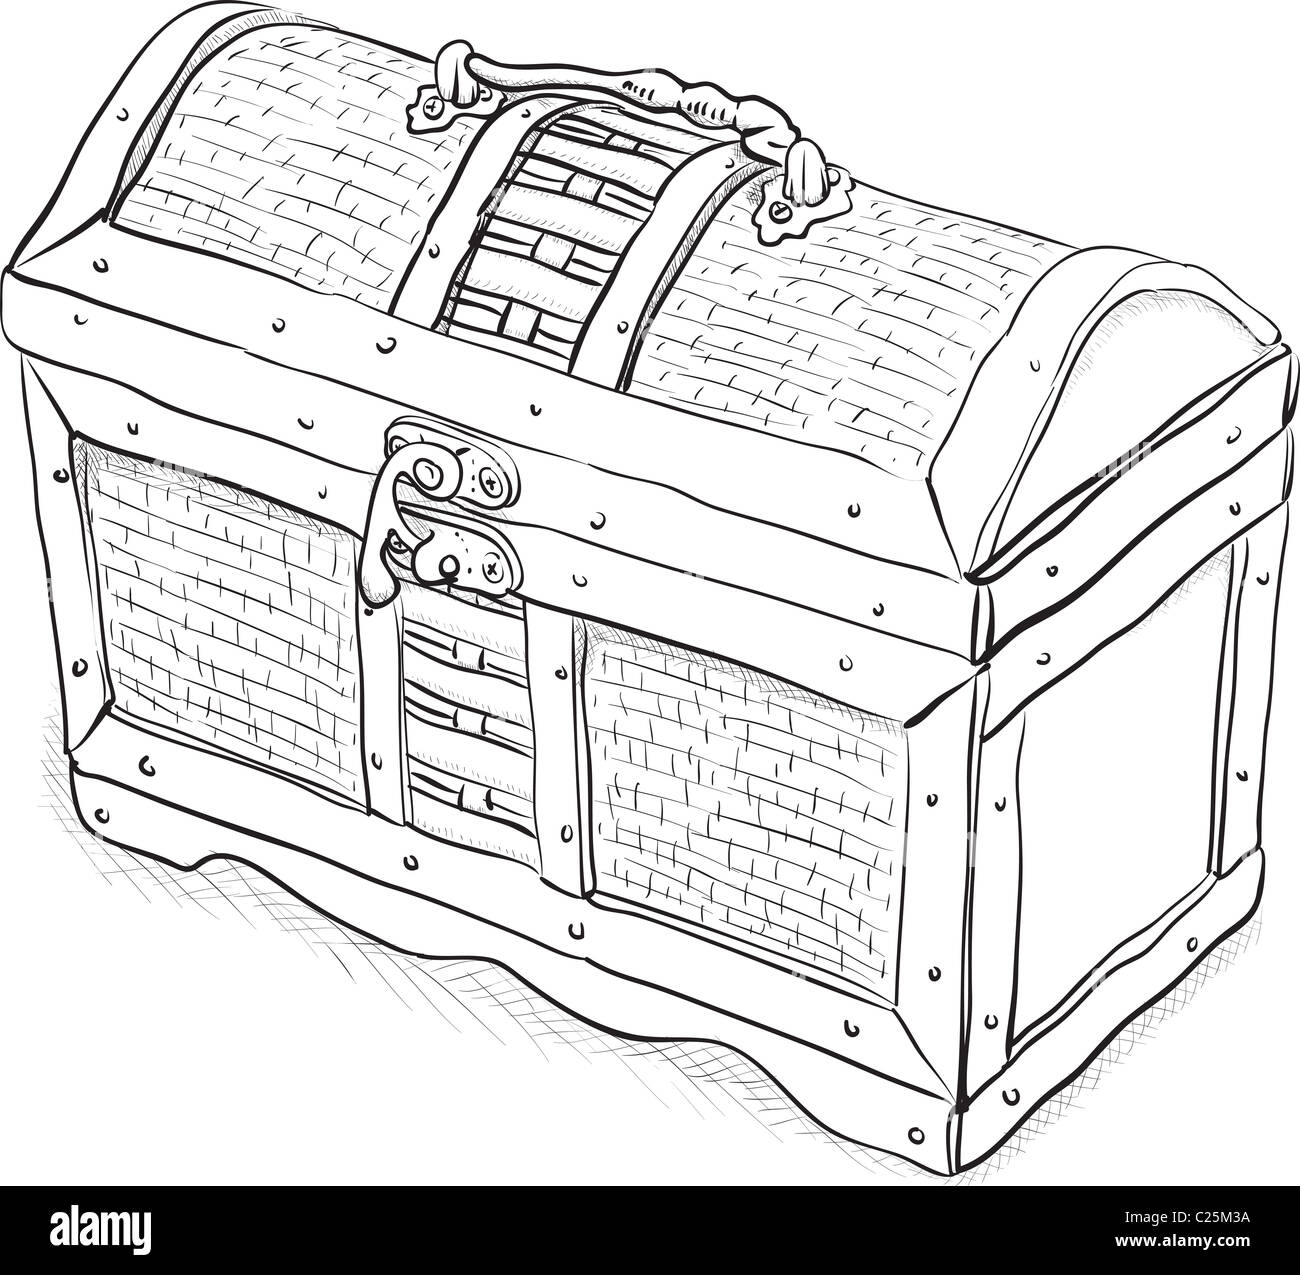 Pirate en bois coffre - une simple illustration monochrome Banque D'Images